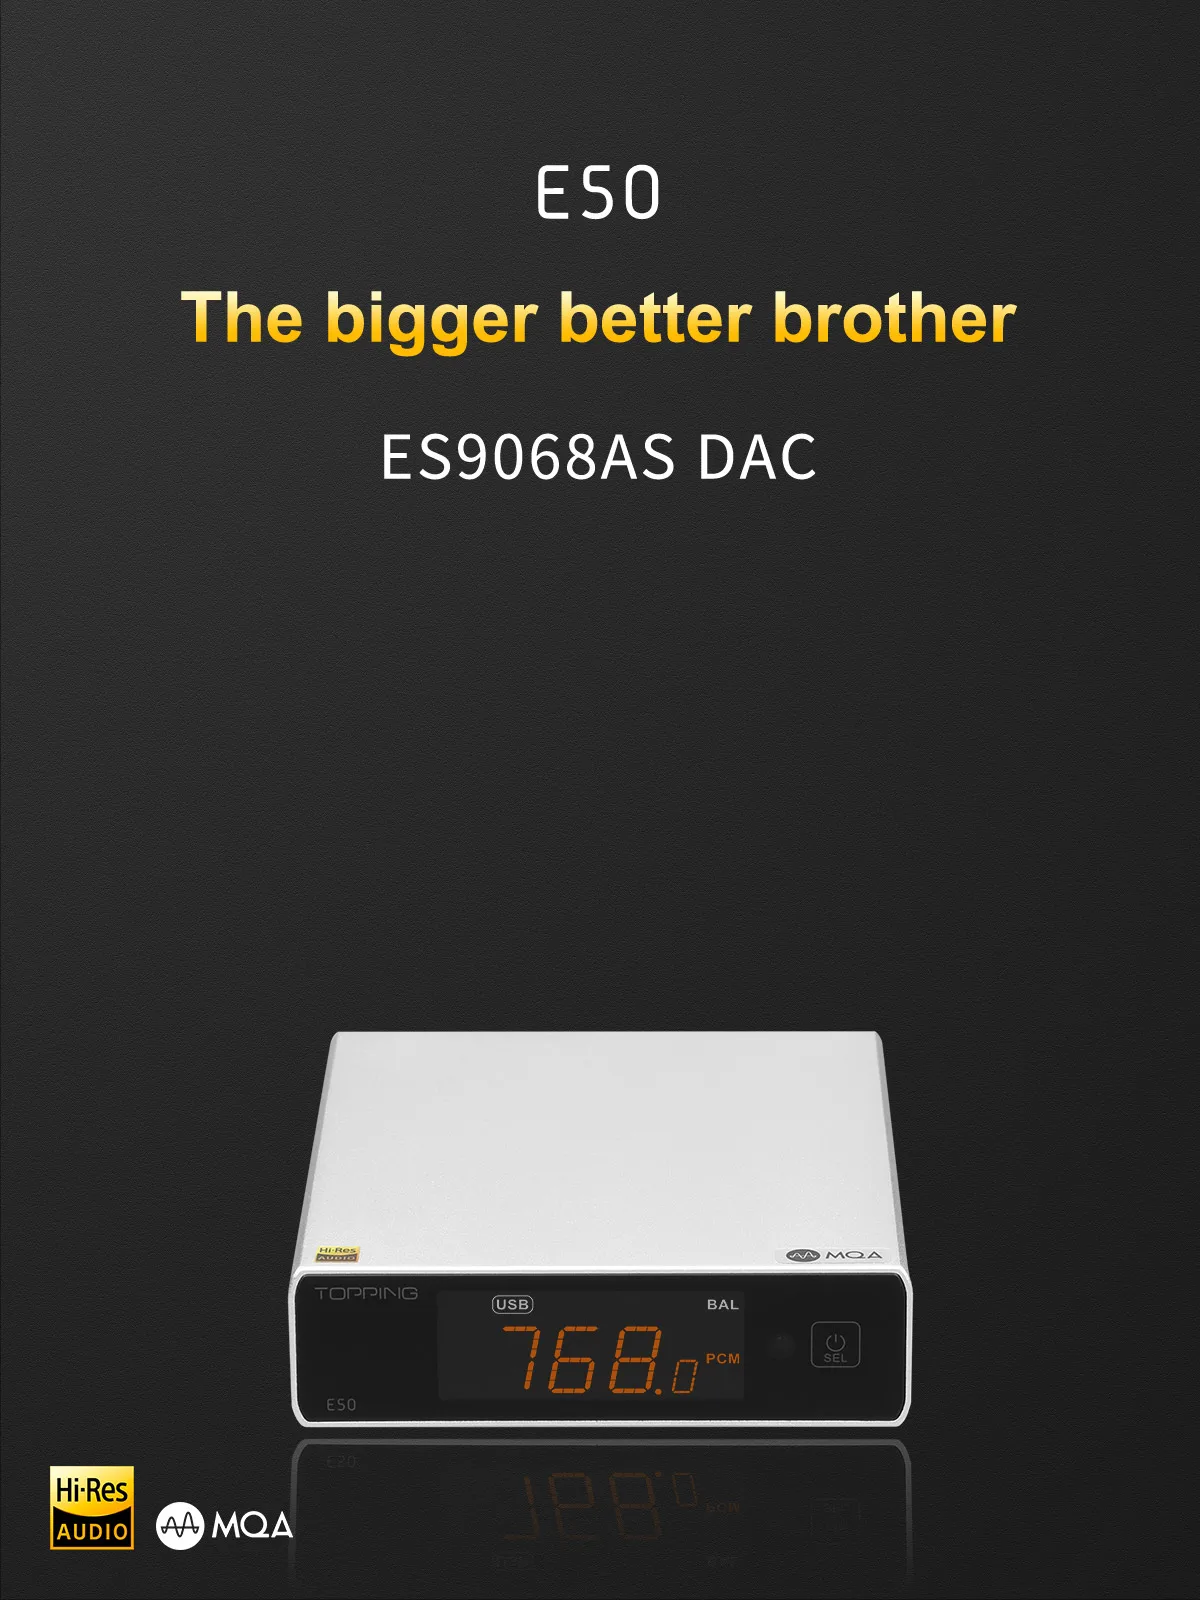 22312円 オリジナル 新登場TOPPING E50 MQA DAC ES9068AS XMOS XU216 DSD512 Native DSD256 DoP PCM768kHz USB COAX OPT入力 RCA TRS出力 デコ